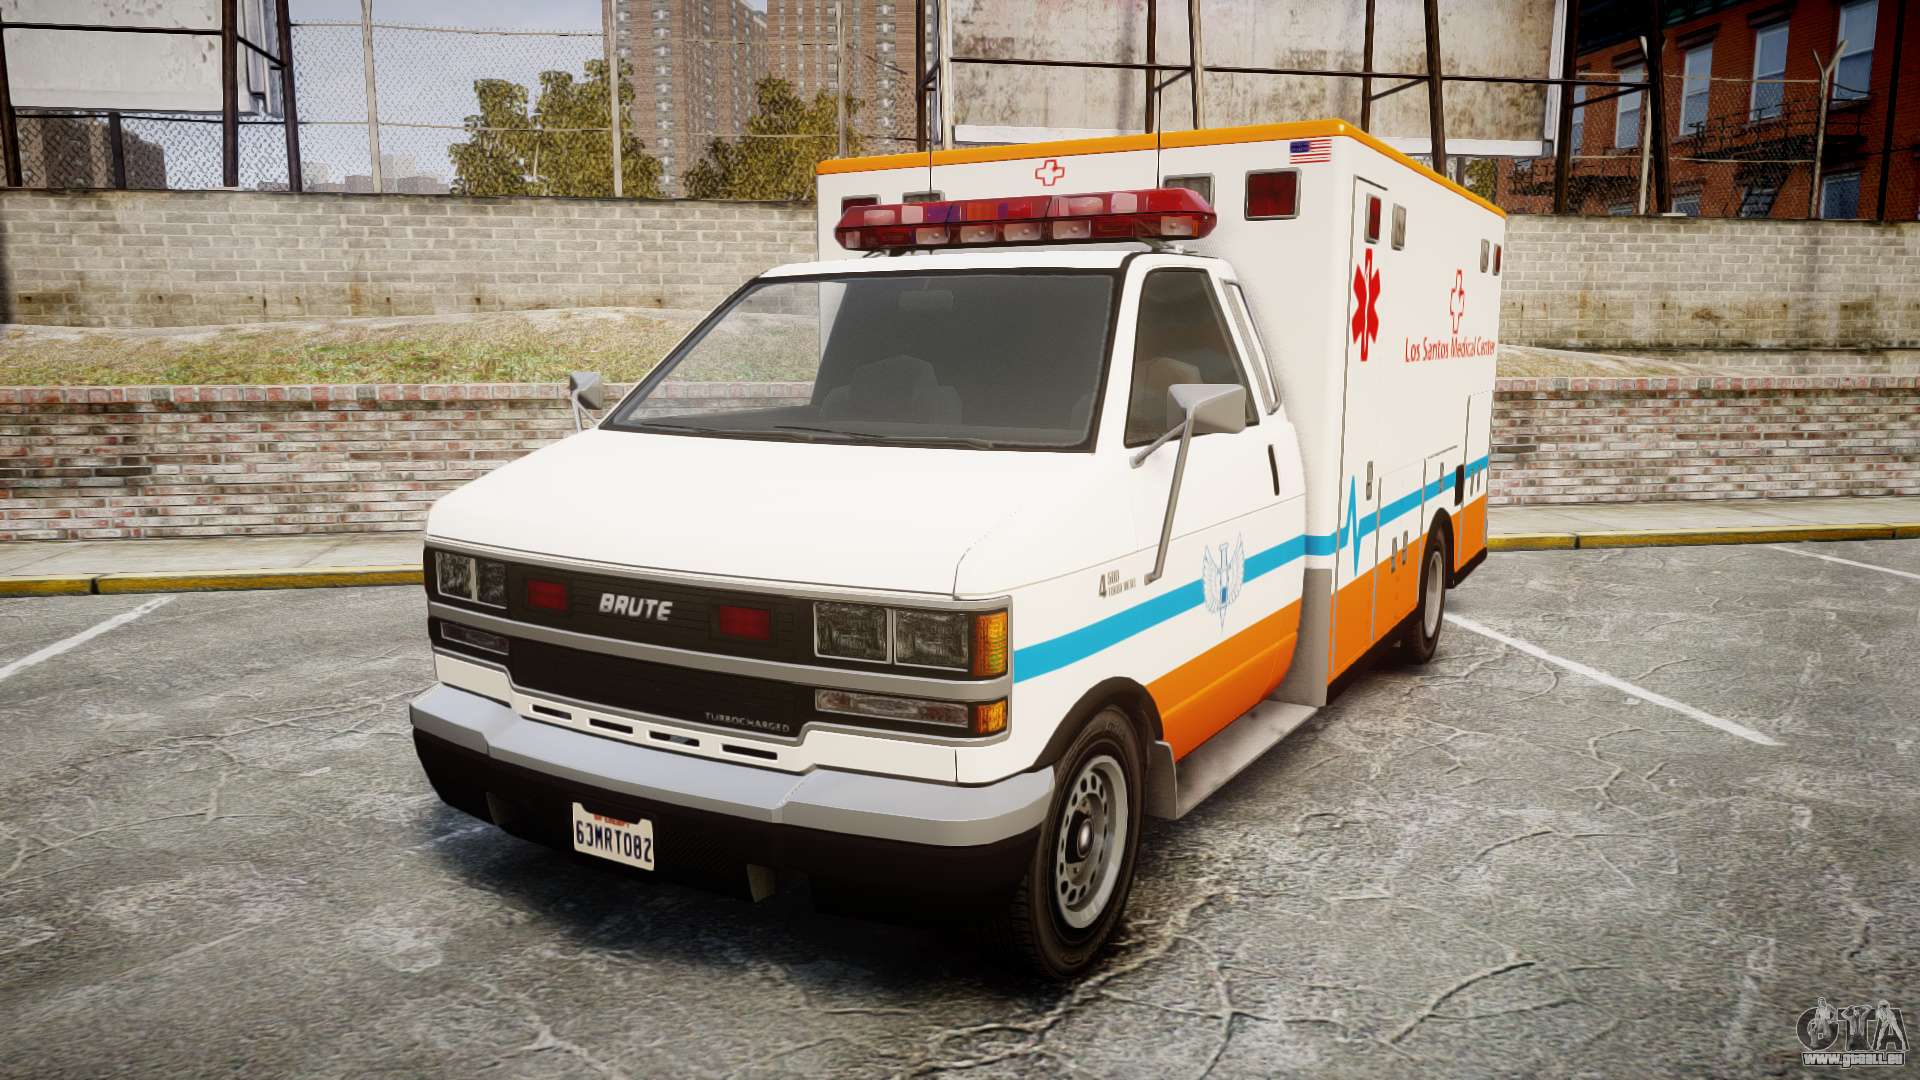 Gta 5 ambulance els фото 80